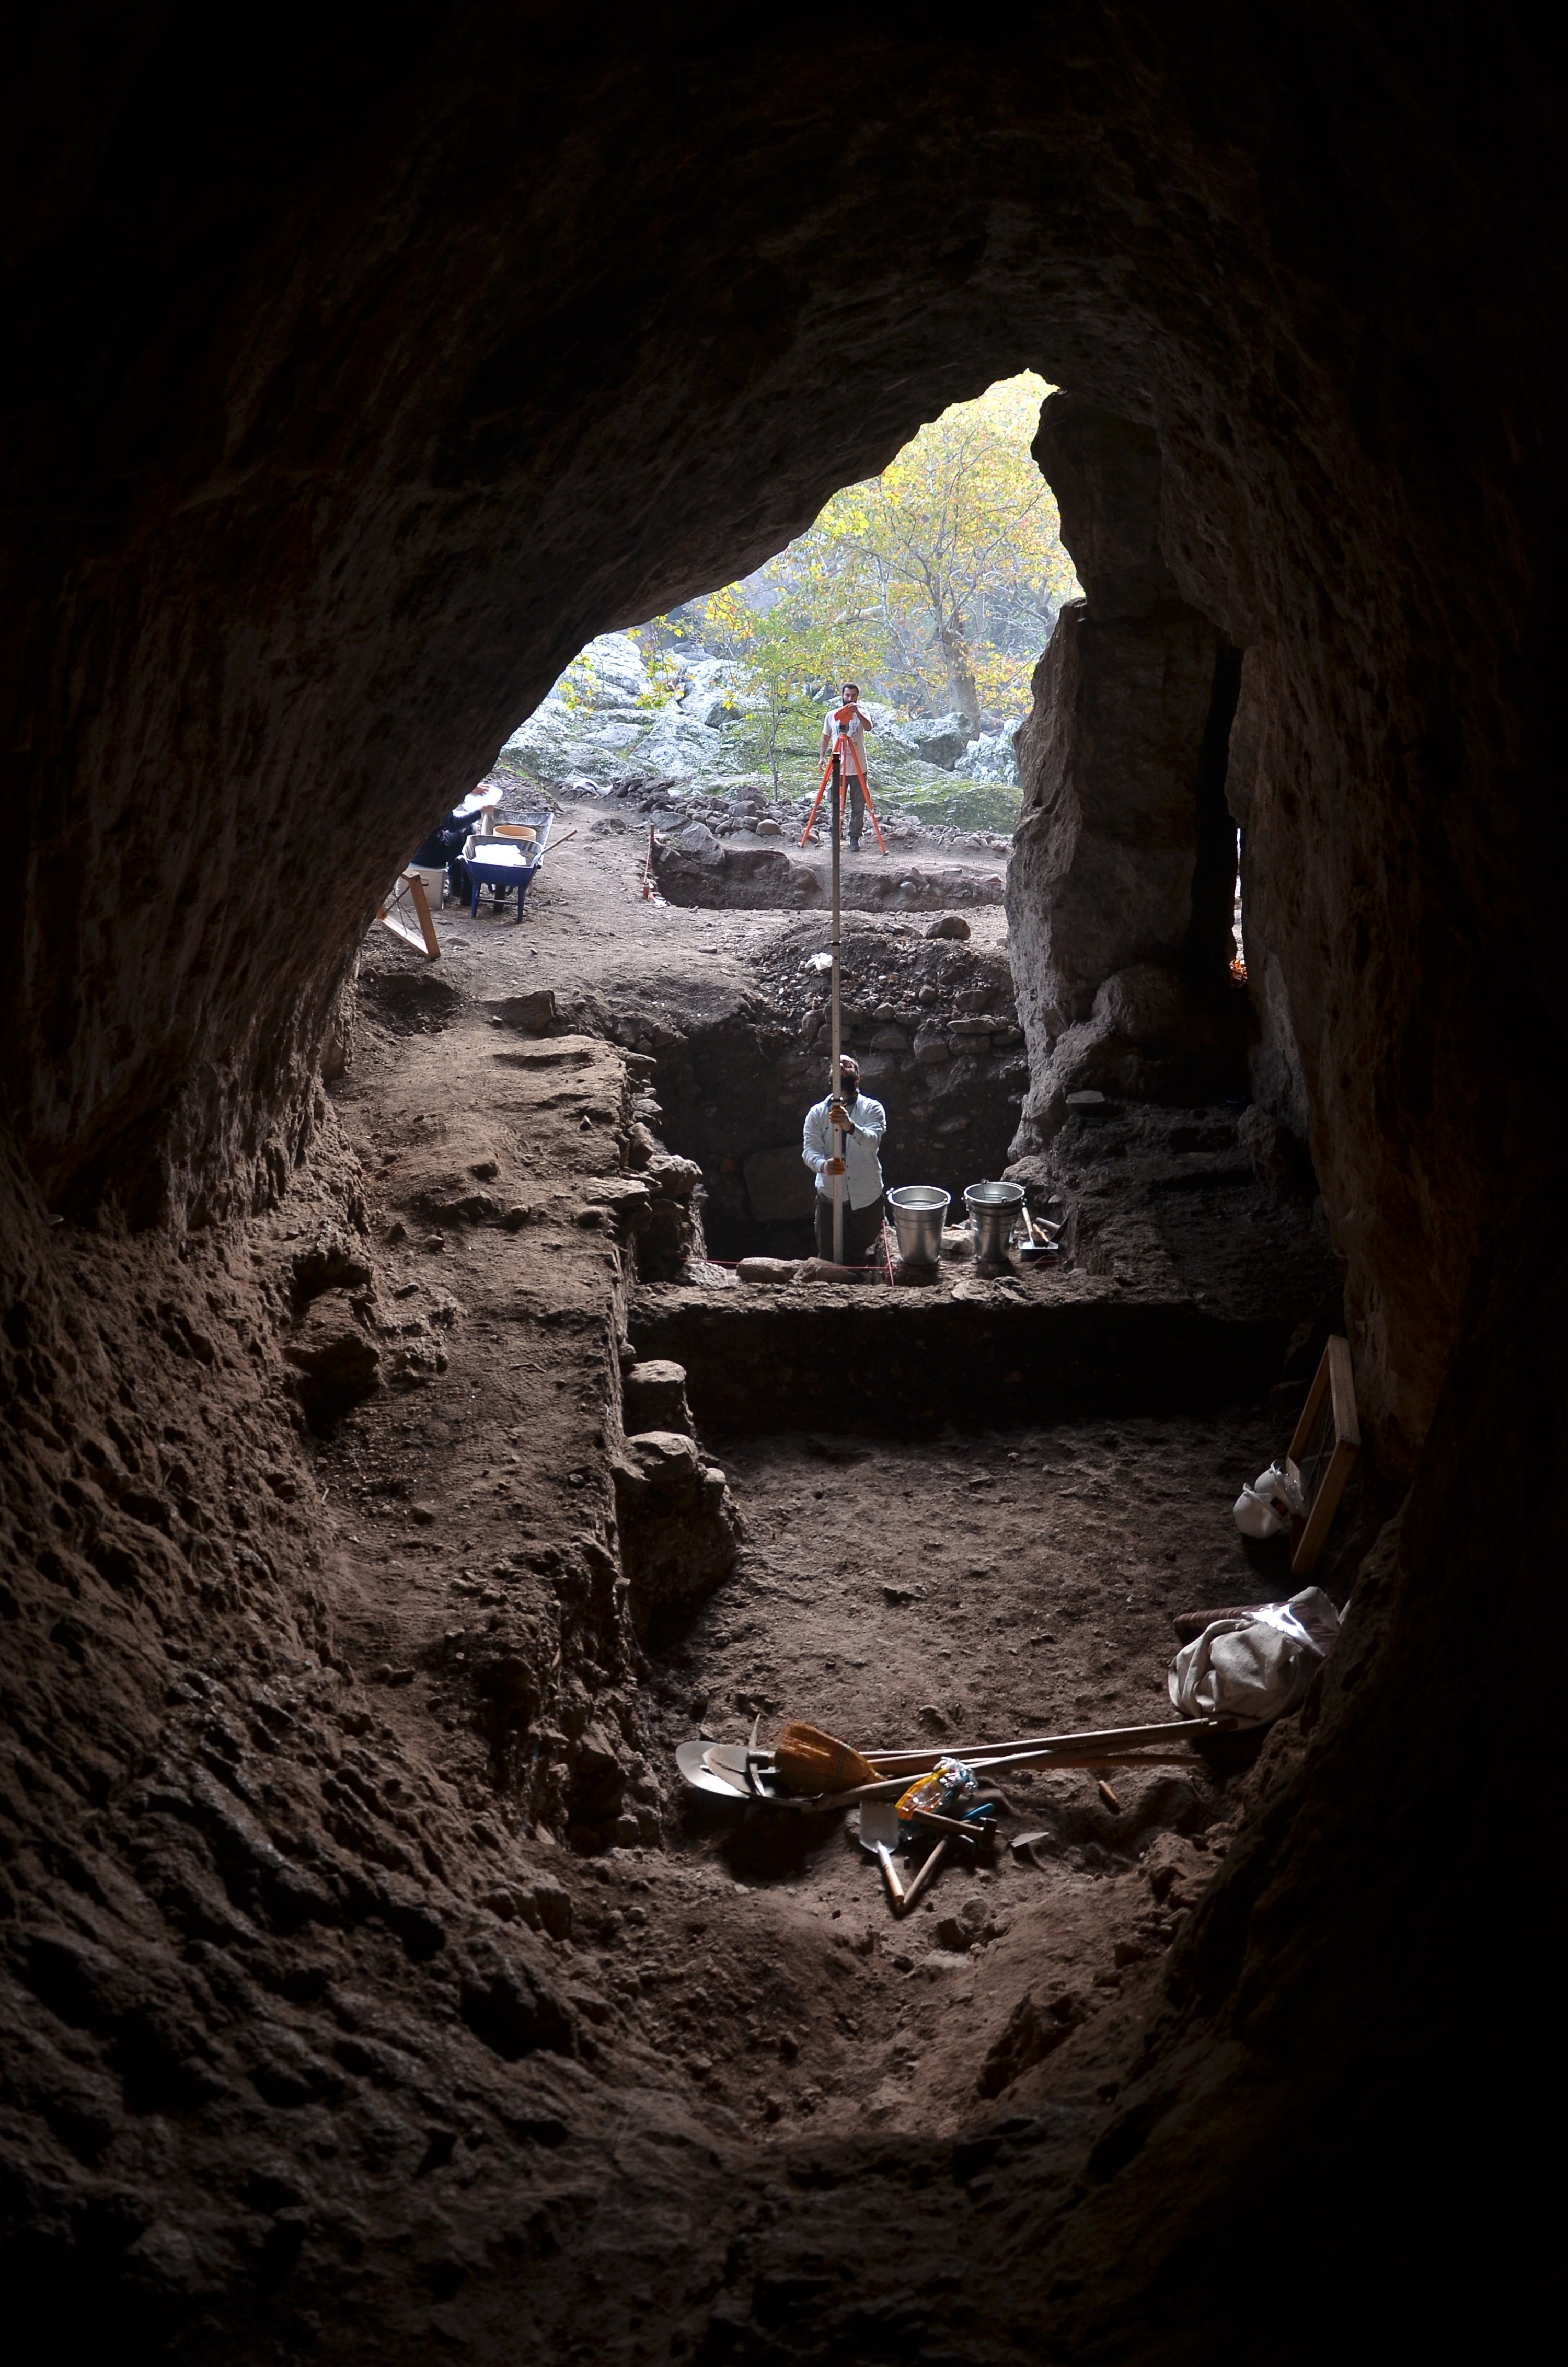 Arkeolog berfoto di dalam gua tempat ditemukannya perkakas batu dan sisa-sisa tulang, Izmir, Turki barat, 23 November 2021. (AA Photo) 